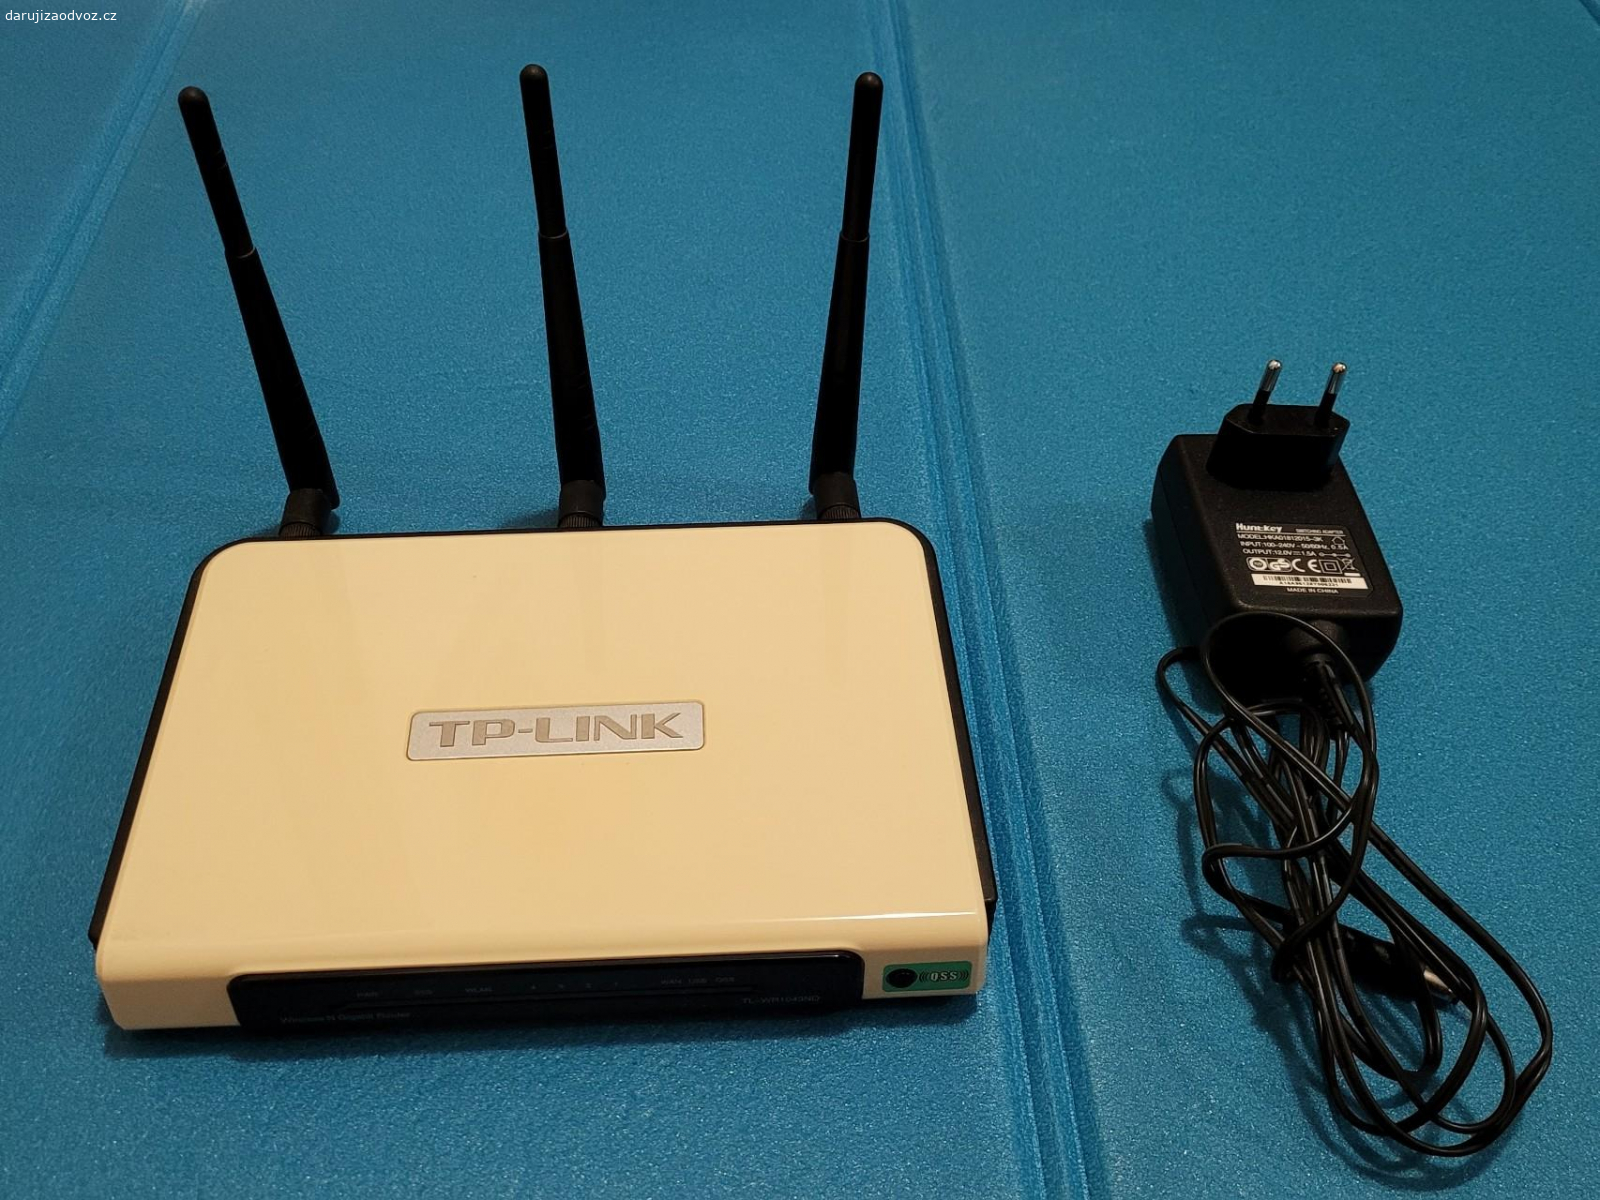 WiFi router TP-LINK TL-WR1043N. Starší funkční TP-LINK TL-WR1043ND - Bezdrátový broadband router, 802.11b/g/n (draft 2.0), max. 300Mbit/s, 1x WAN, 4x GLAN, 1x USB, 3x RSMA, 64/128/152-bit WEP, WPA/WPA2 PSK, SPI NAT firewall, VPN pass-through, WDS, MIMO, SST, CCA, QSS.